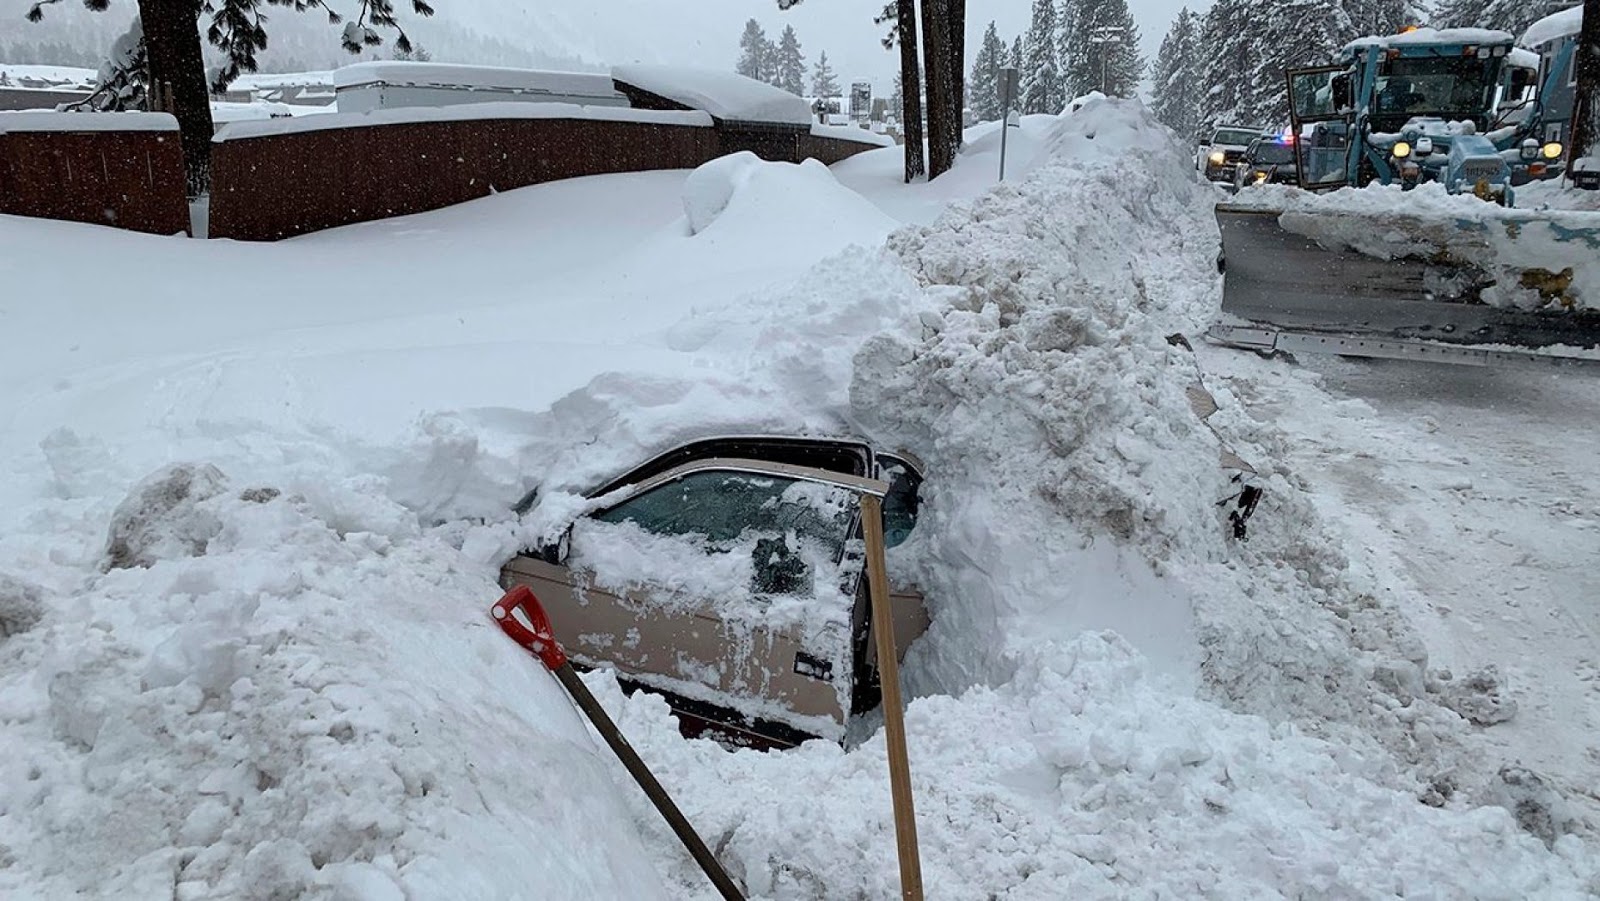 Село занесенное снегом оттаивает по немногу. Машину засыпало снегом. Машина завалена снегом. Откапывает машину. Машина в сугробе.